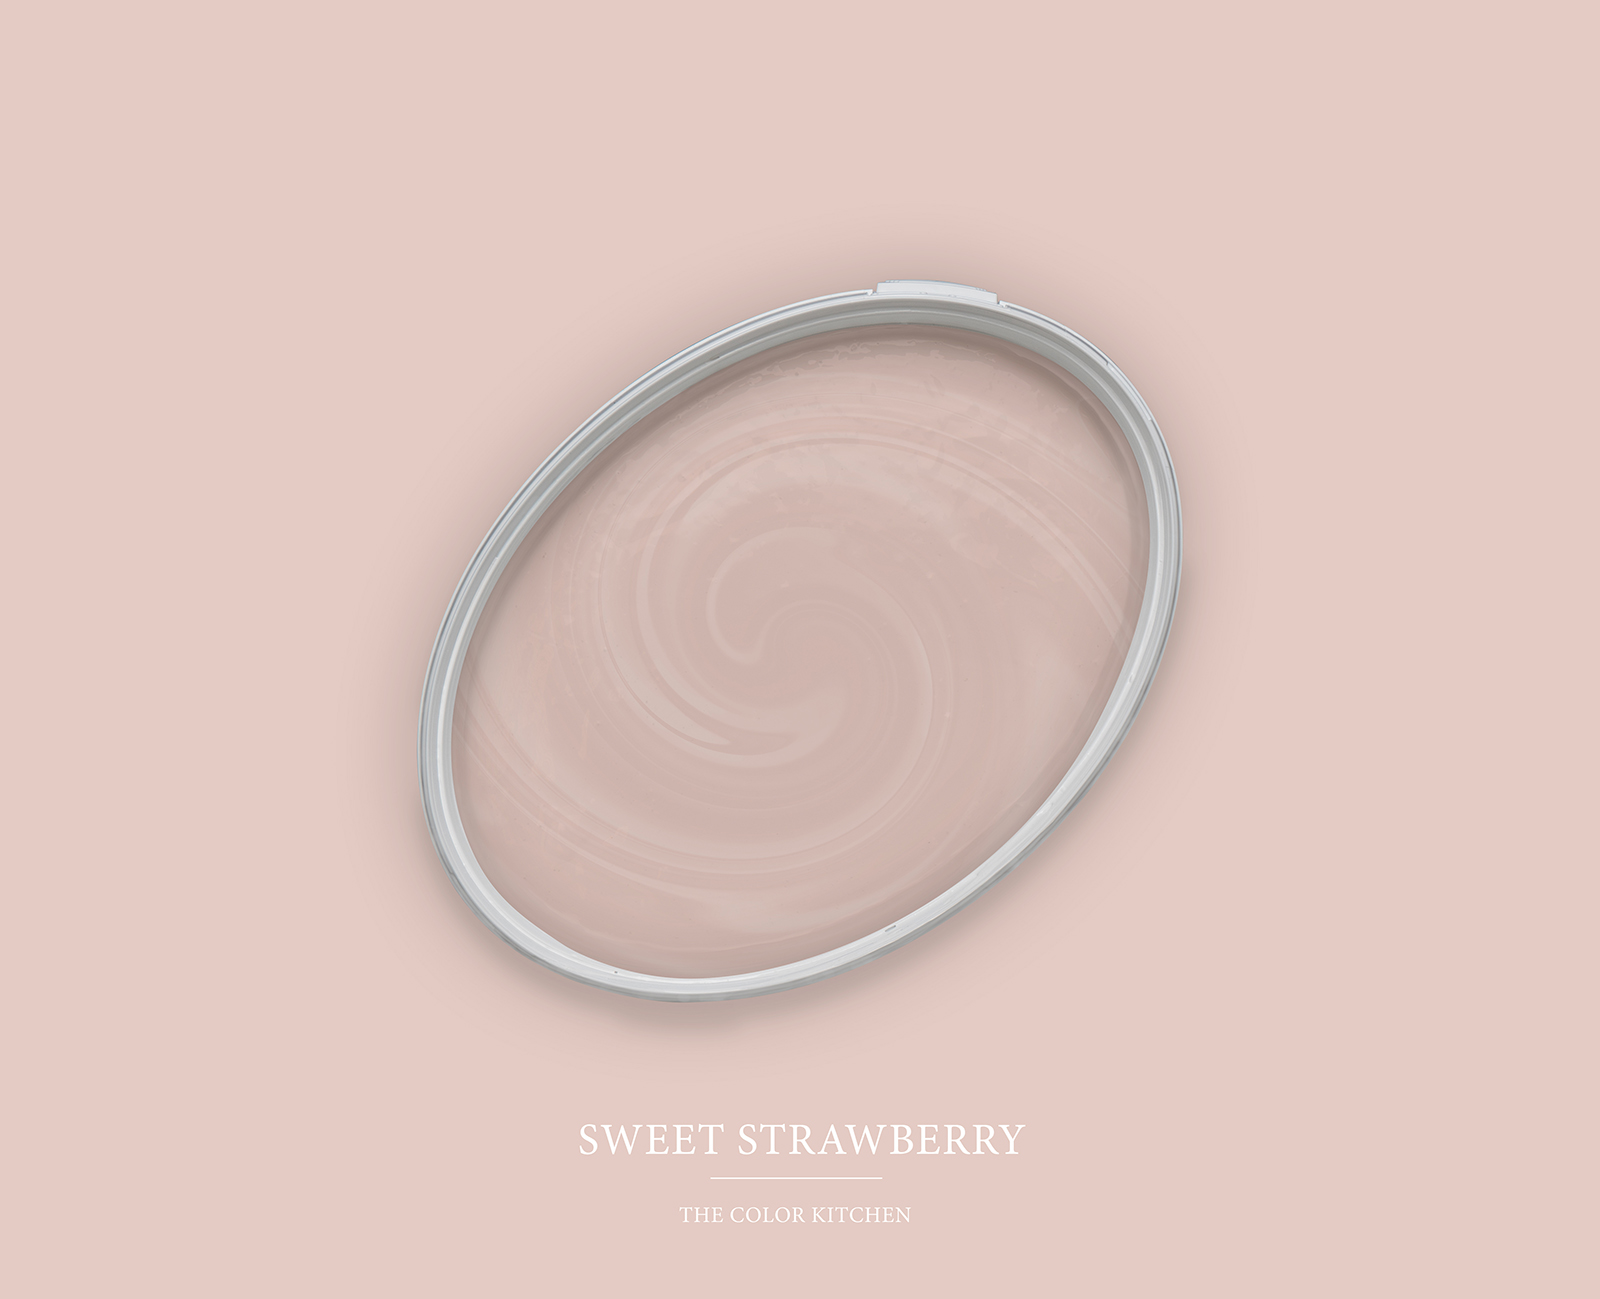         Wandfarbe ein Zwischenspiel von Rosa und Beige »Sweet Strawberry« TCK7007 – 2,5 Liter
    